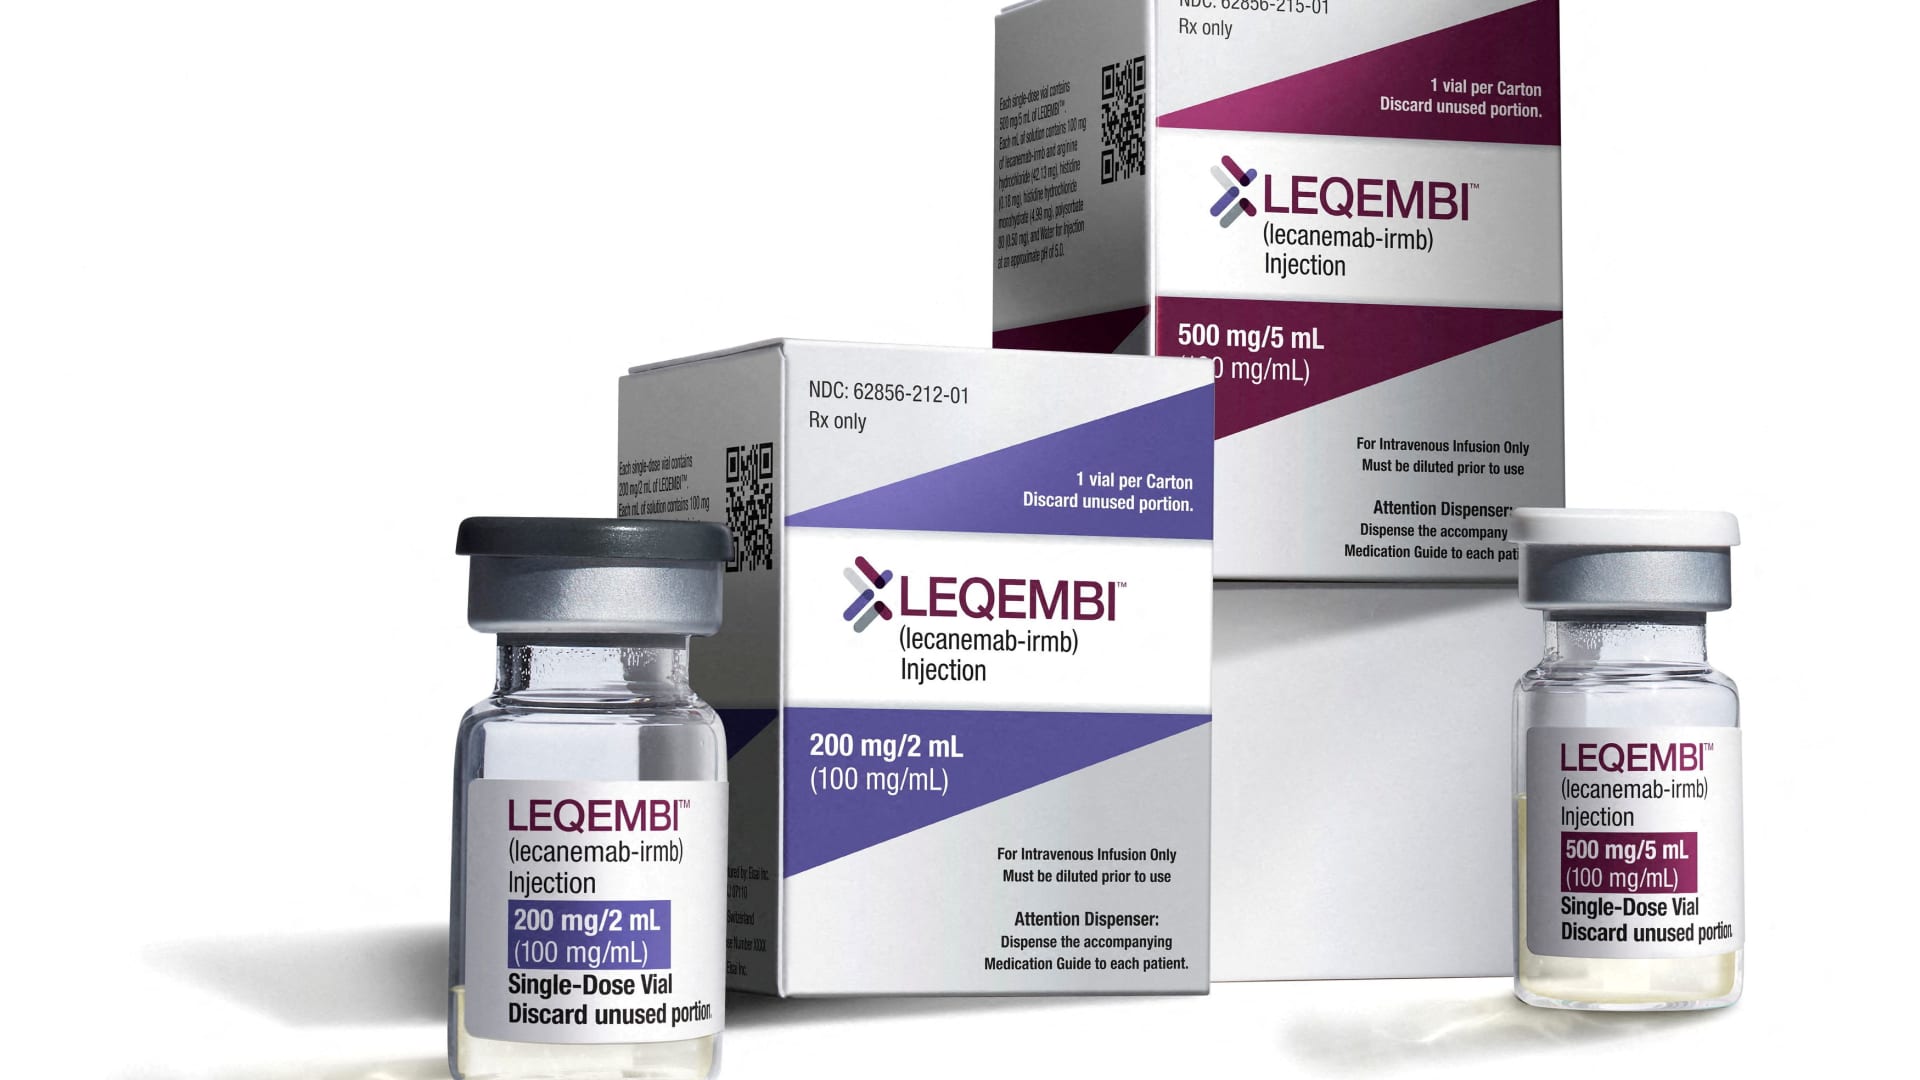 FDA advisors endorse Alzheimer’s treatment Leqembi paving way for full approval this summer